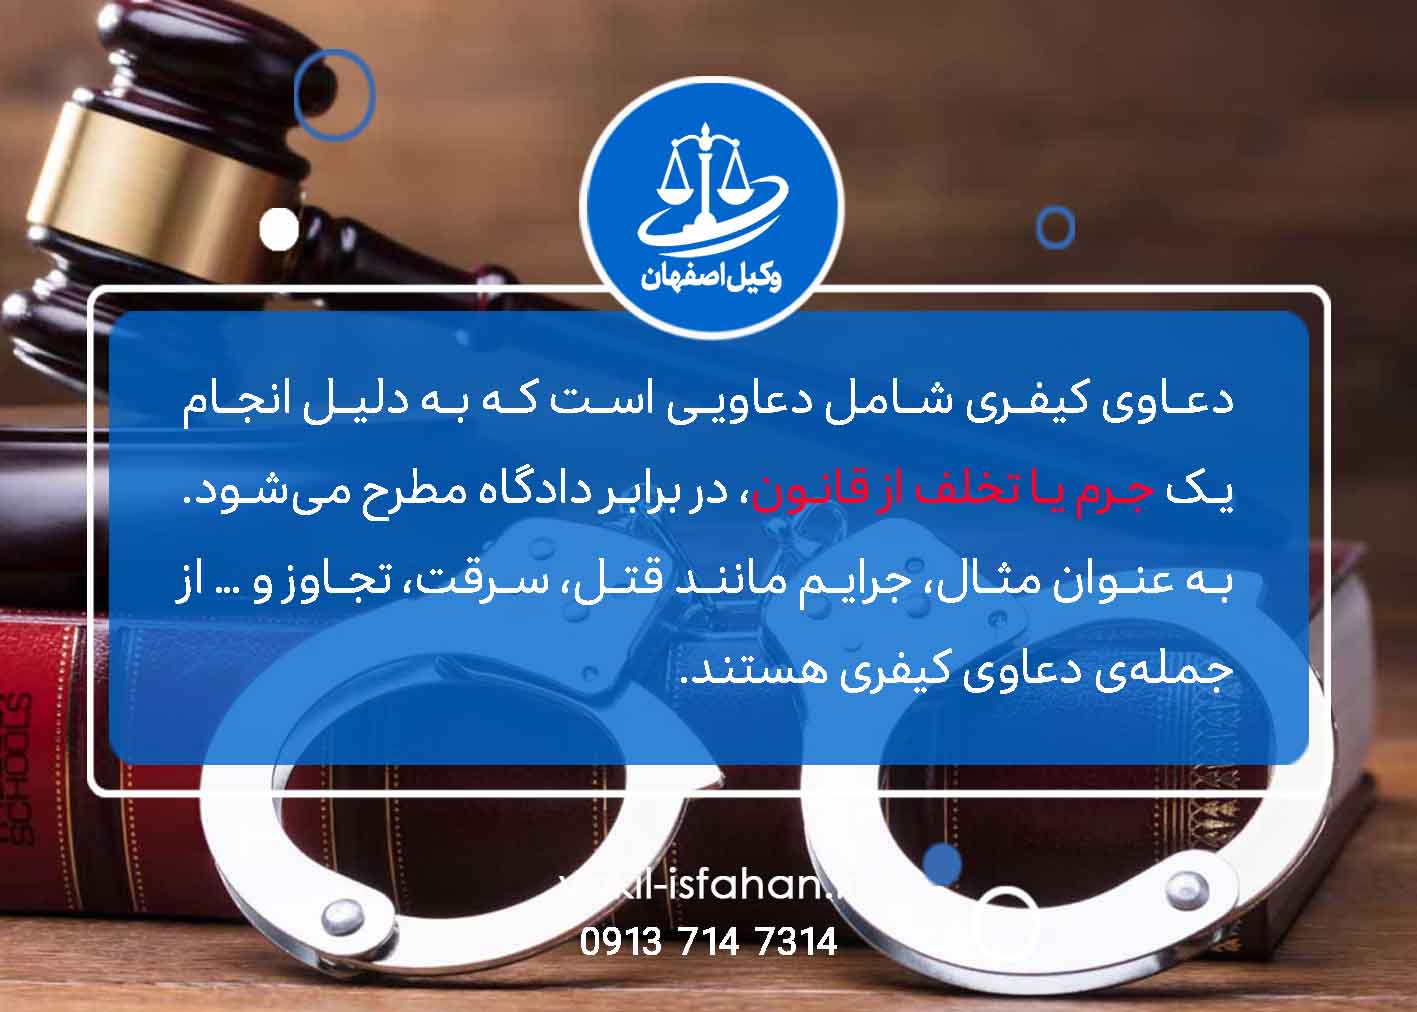 وکیل کیفری در اصفهان